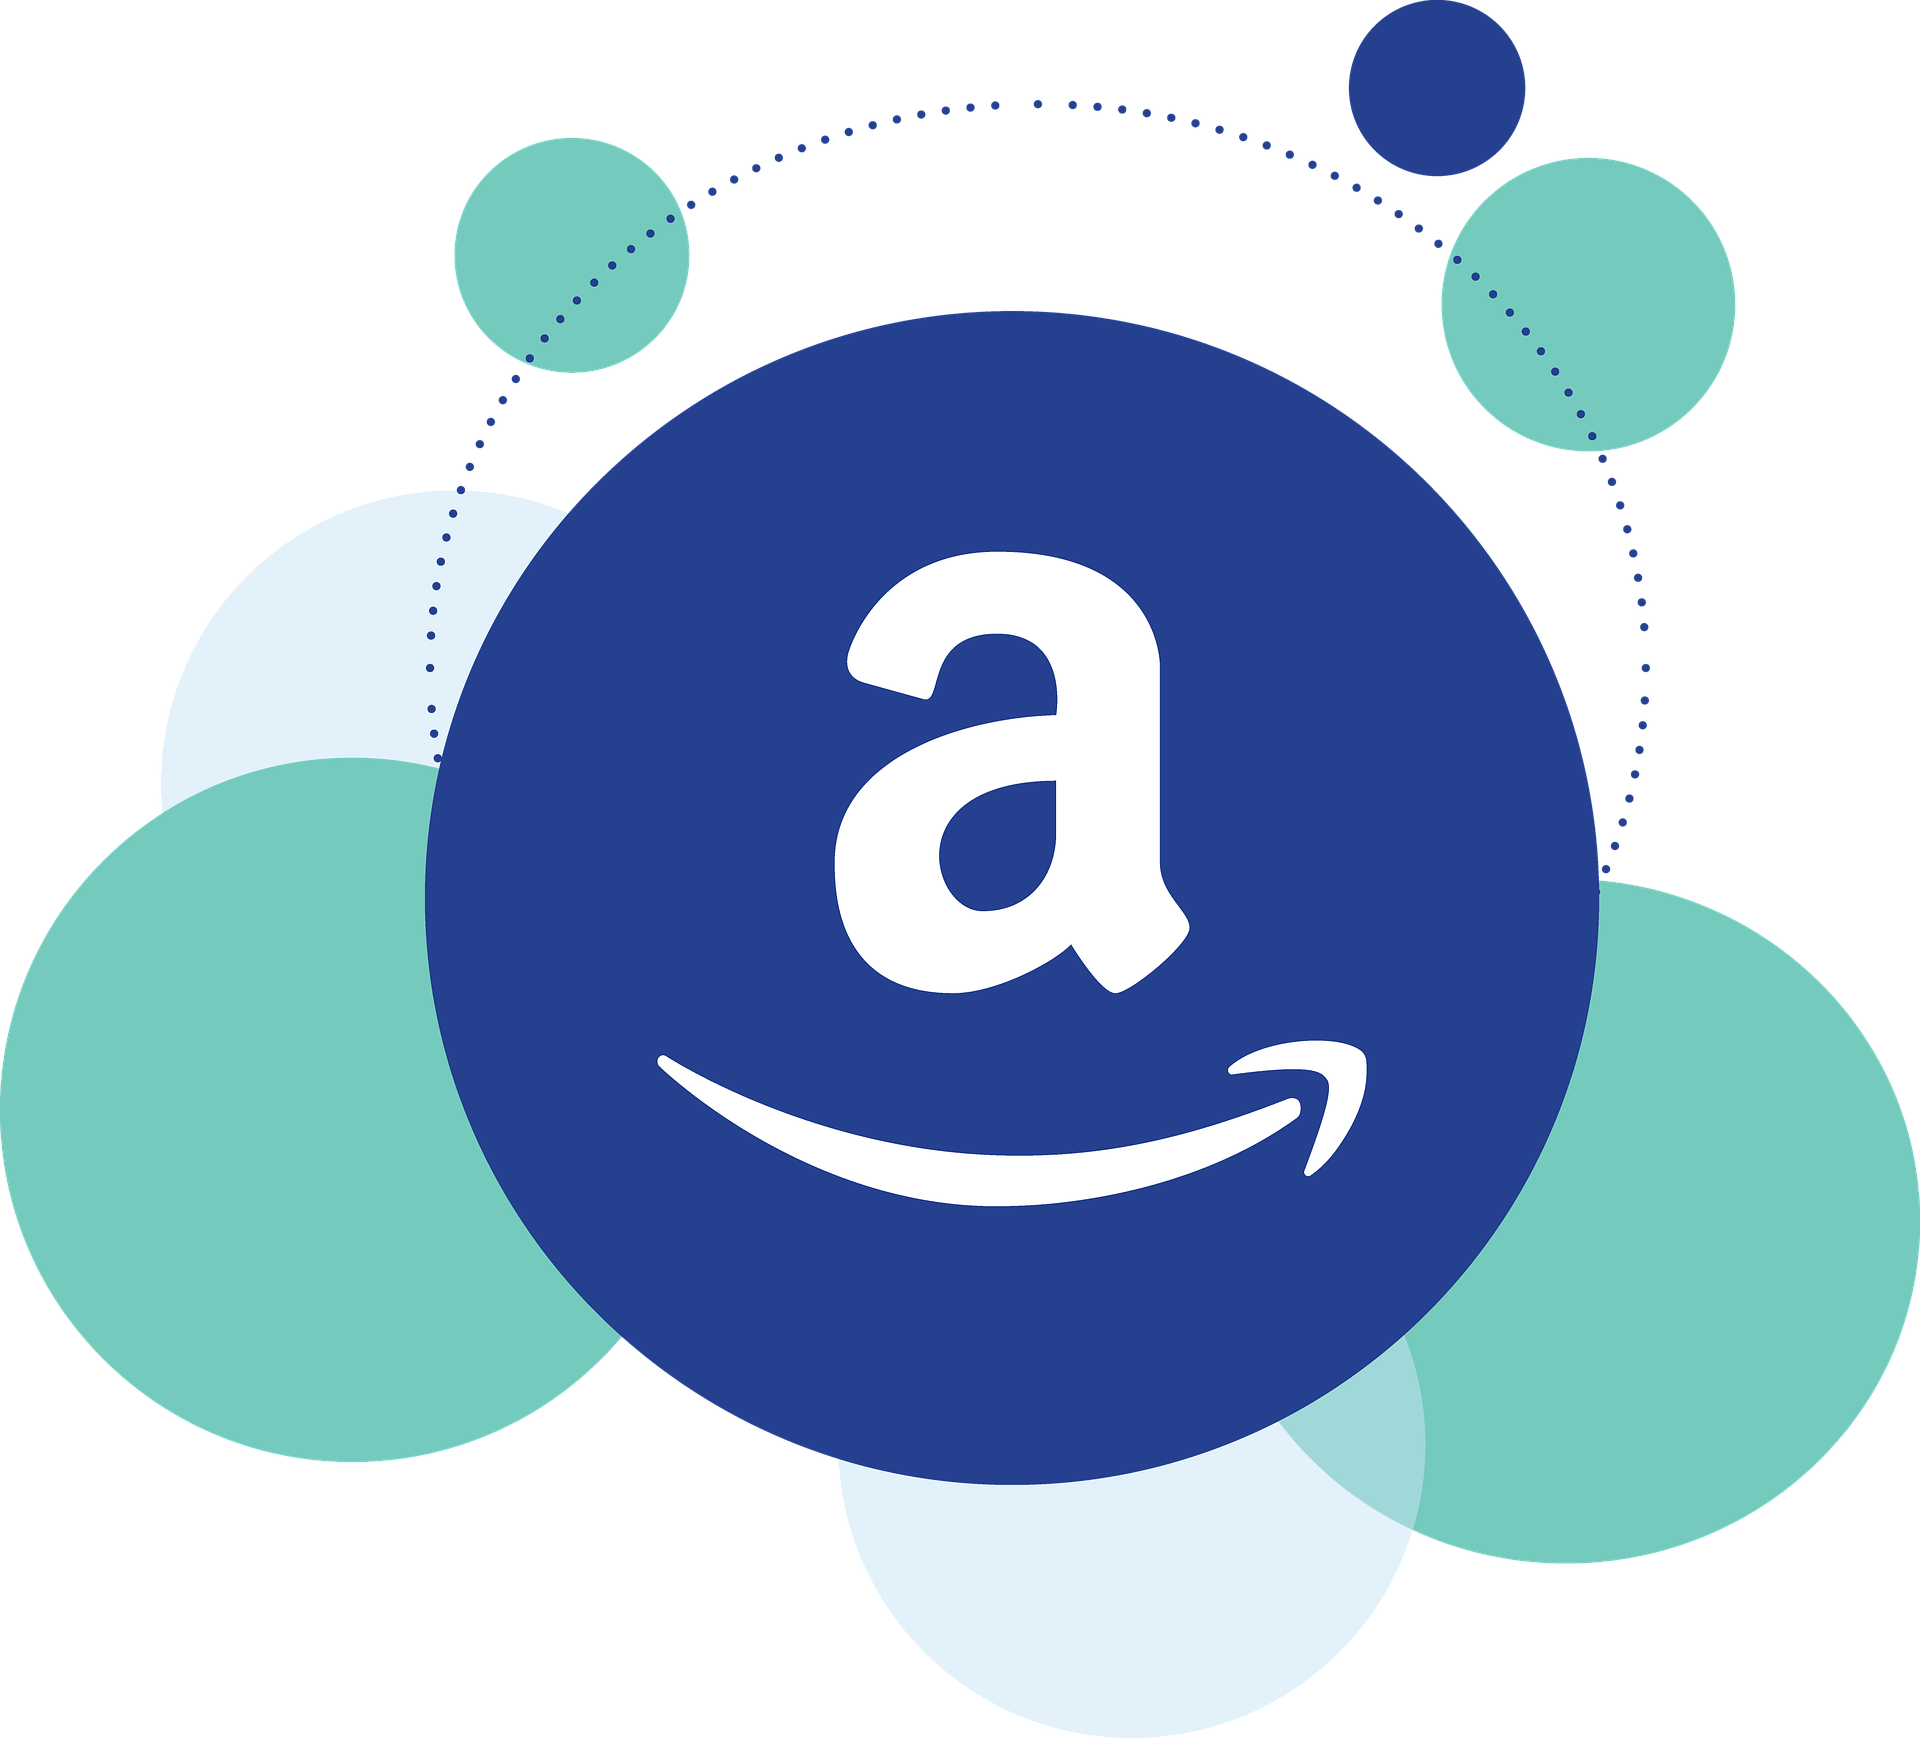 Jeff Bezos quitte Amazon